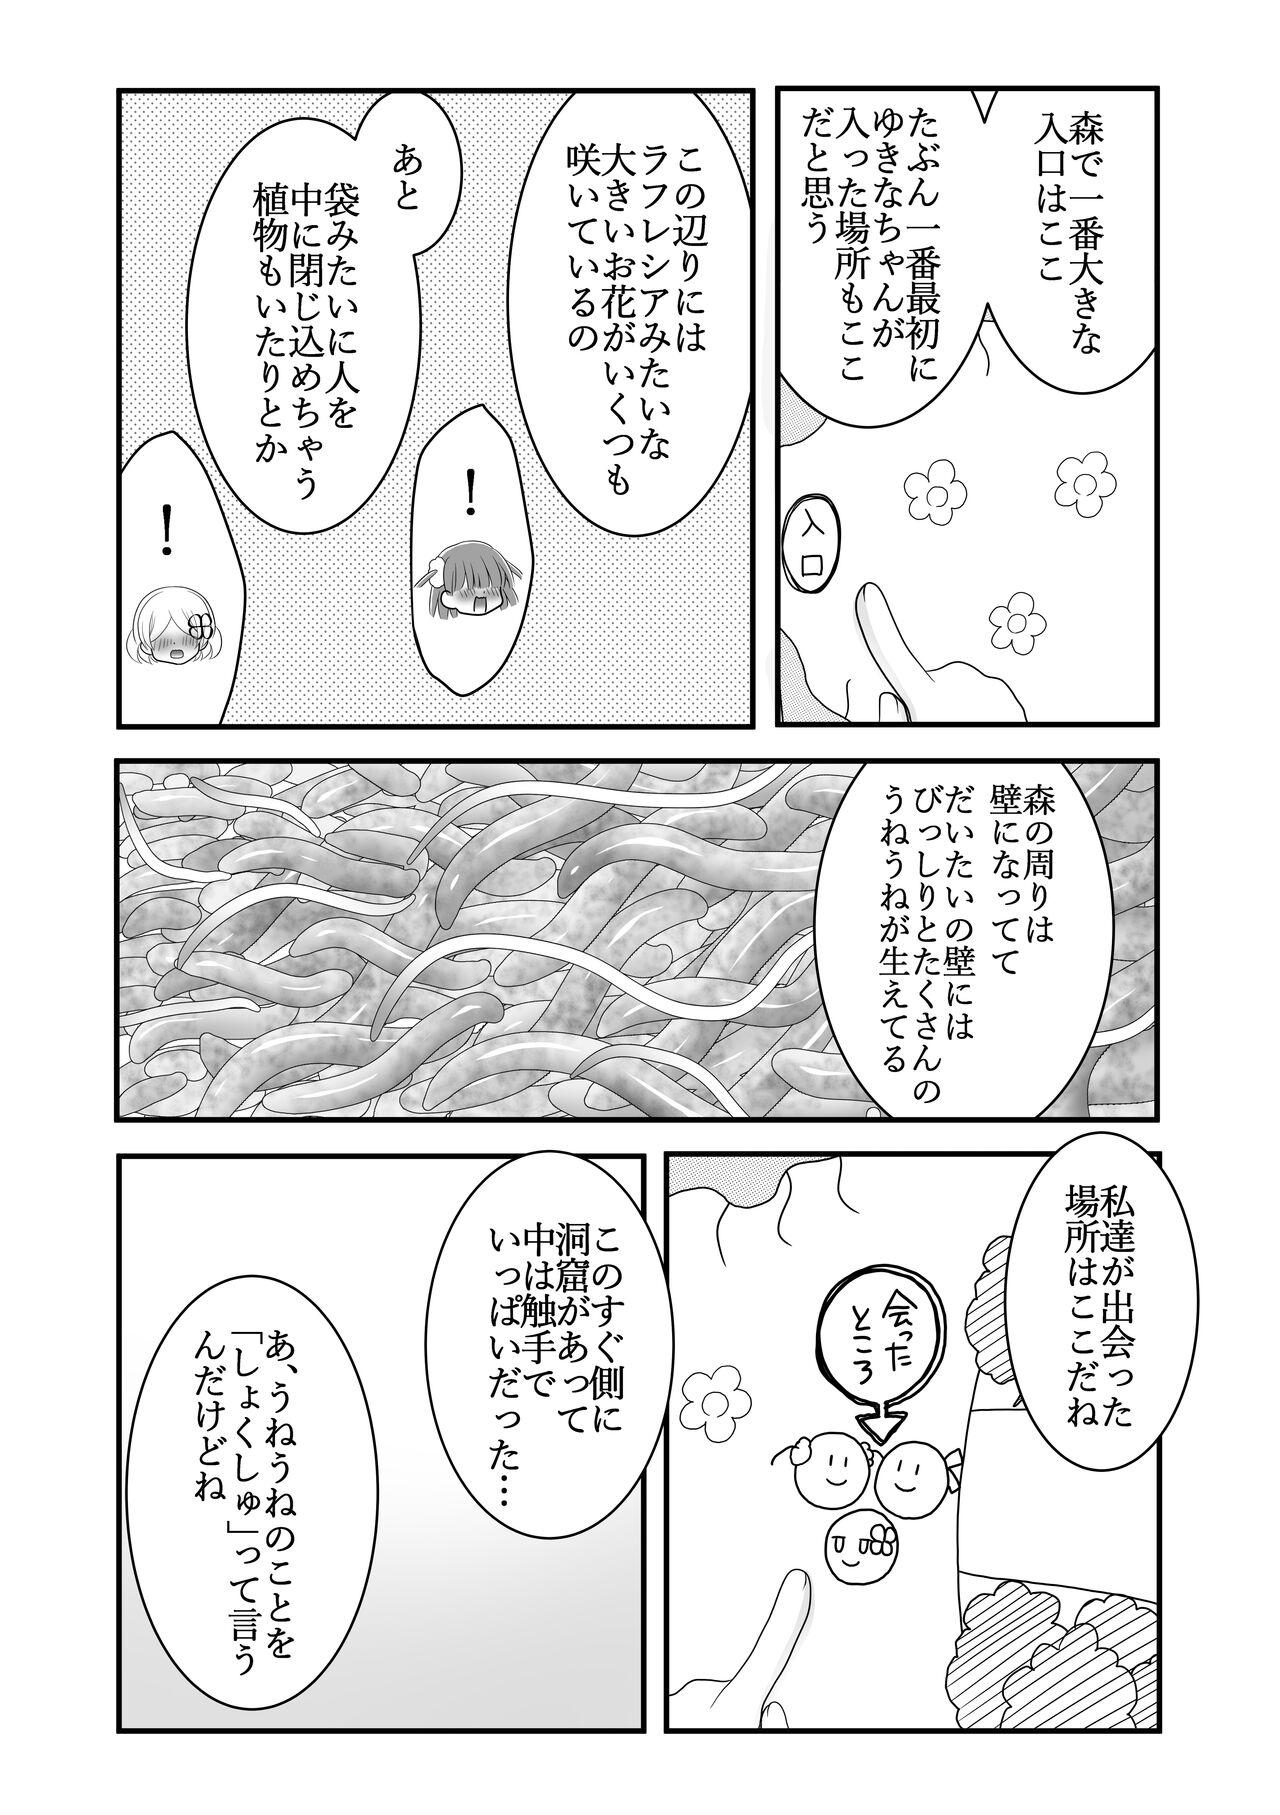 8teen Maigo no Mori no Kusuguribana 5 - Original Tia - Page 3